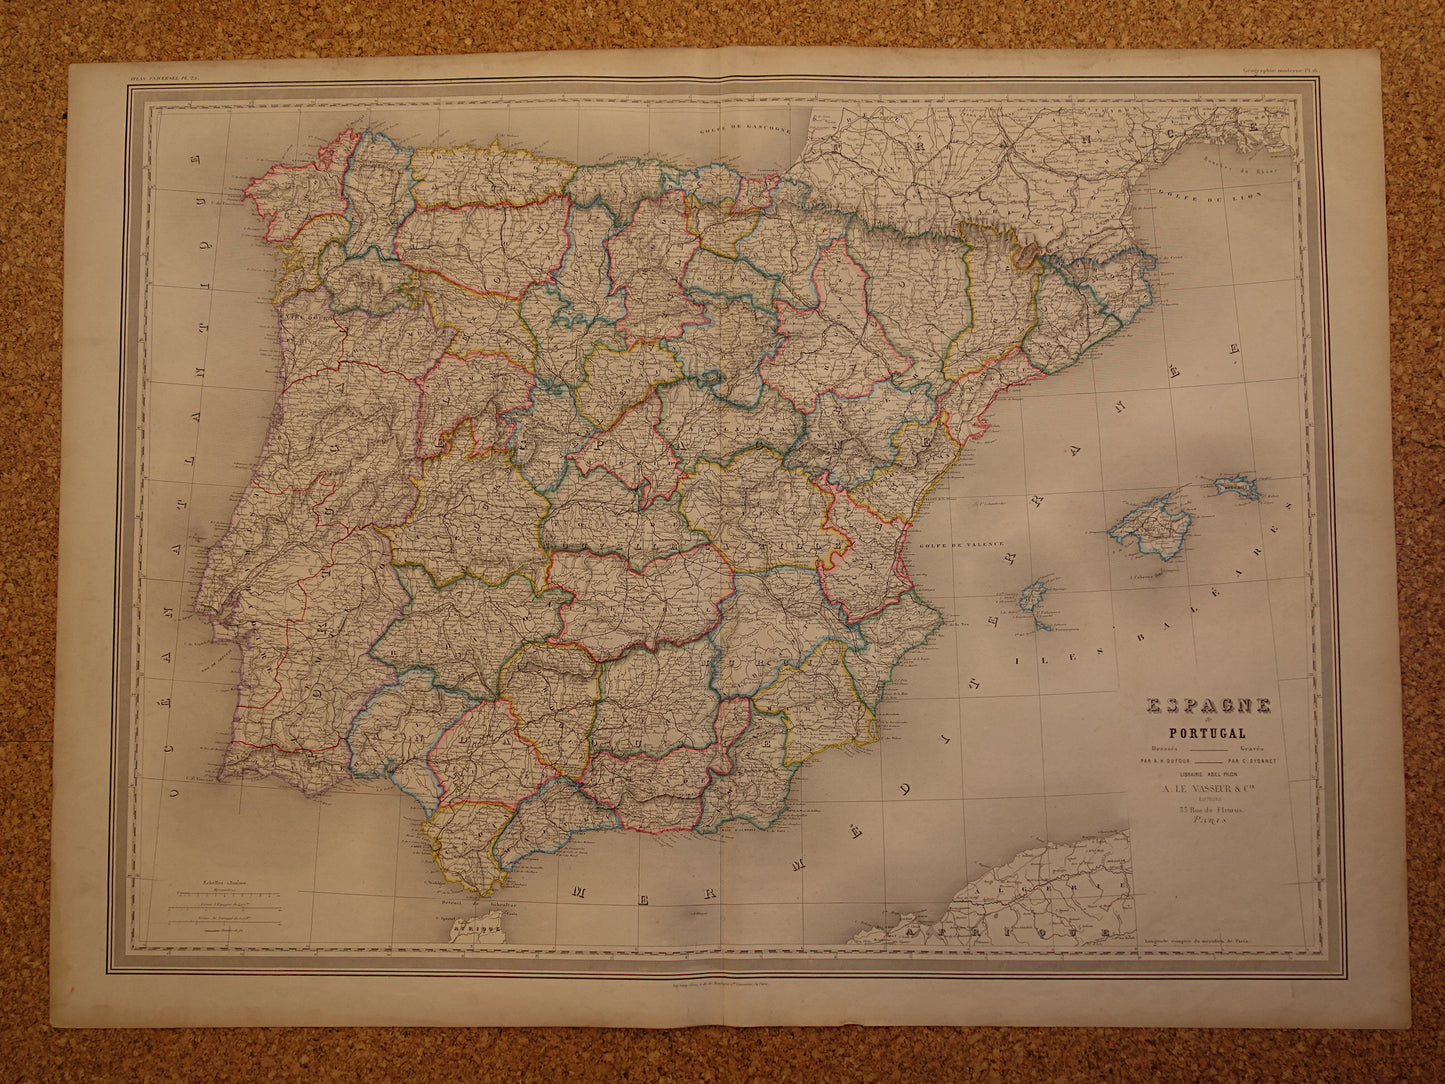 Grote antieke landkaart van Spanje en Portugal uit 1886 Zeer mooie handgekleurde Franse kaart Originele vintage kaarten